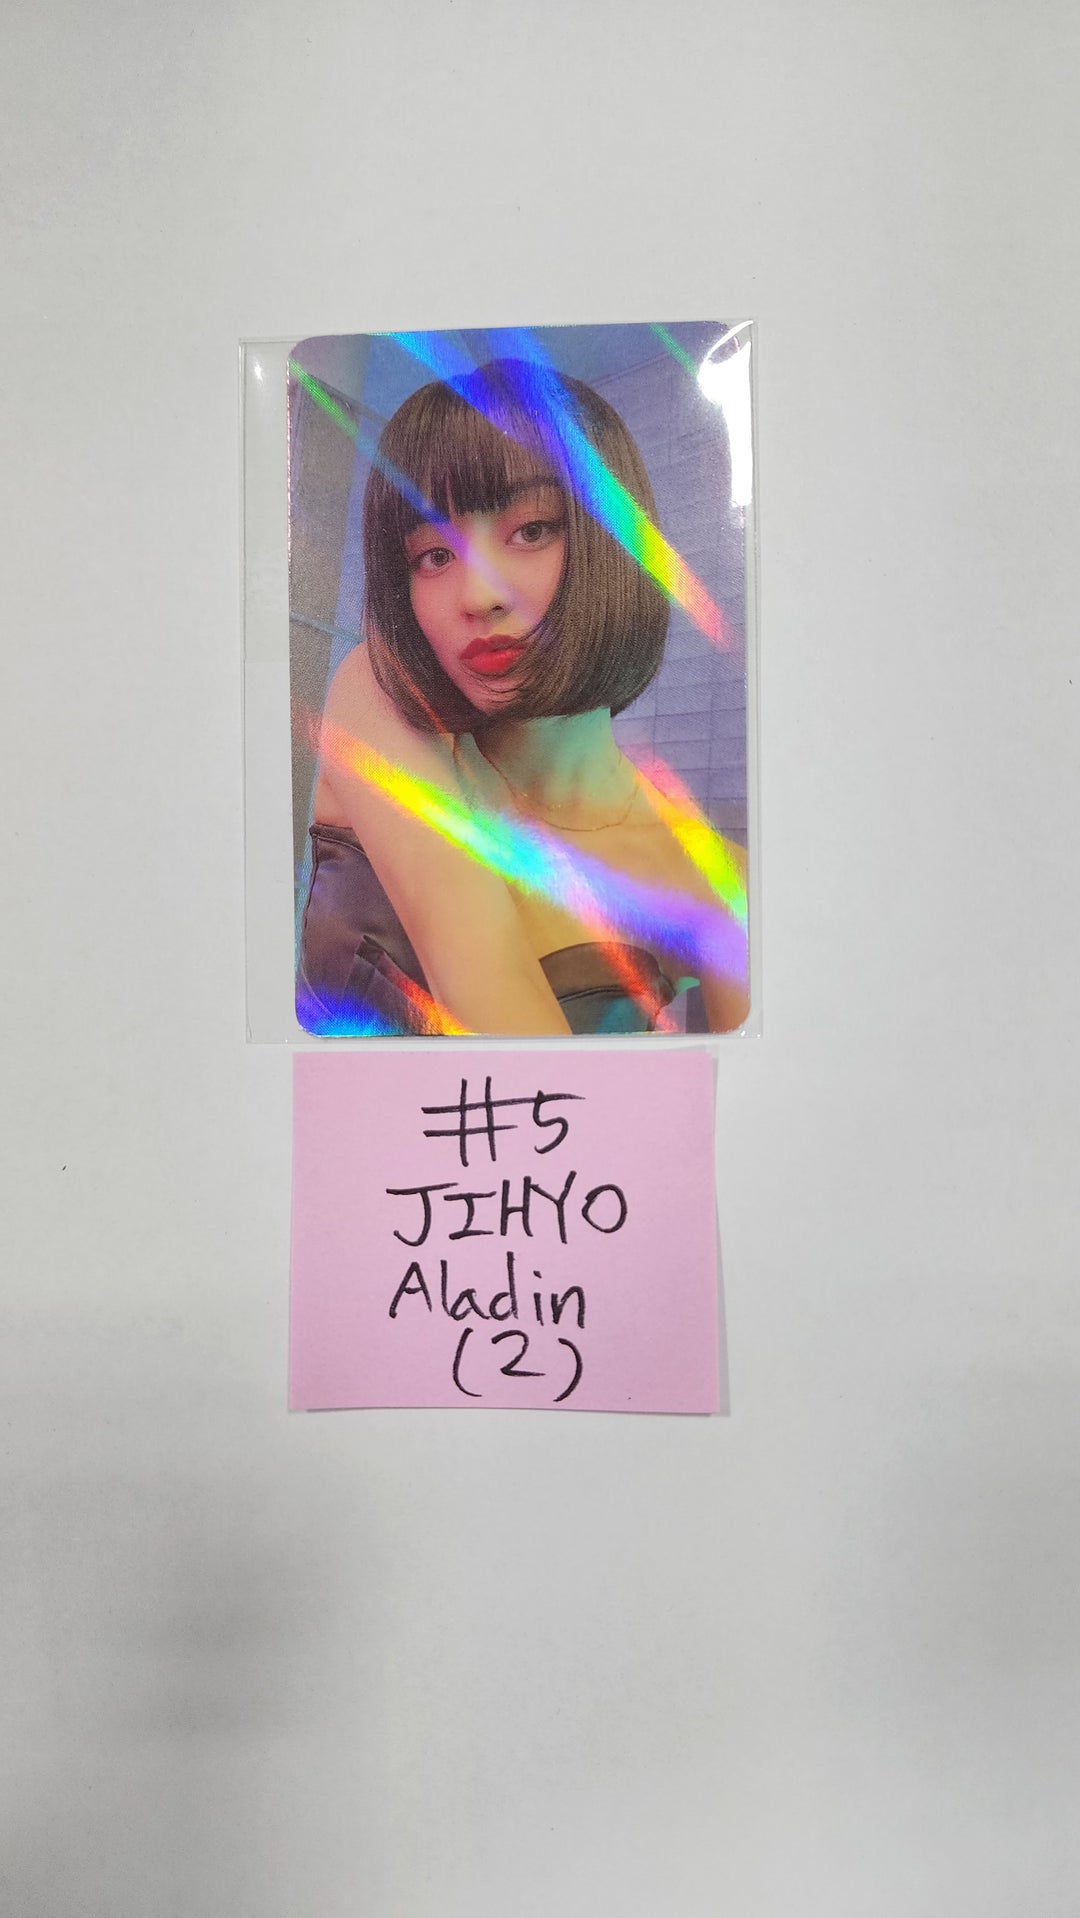 트와이스 "BETWEEN 1&amp;2" 11th Mini Album - Aladin 예약판매 혜택 홀로그램 포토카드